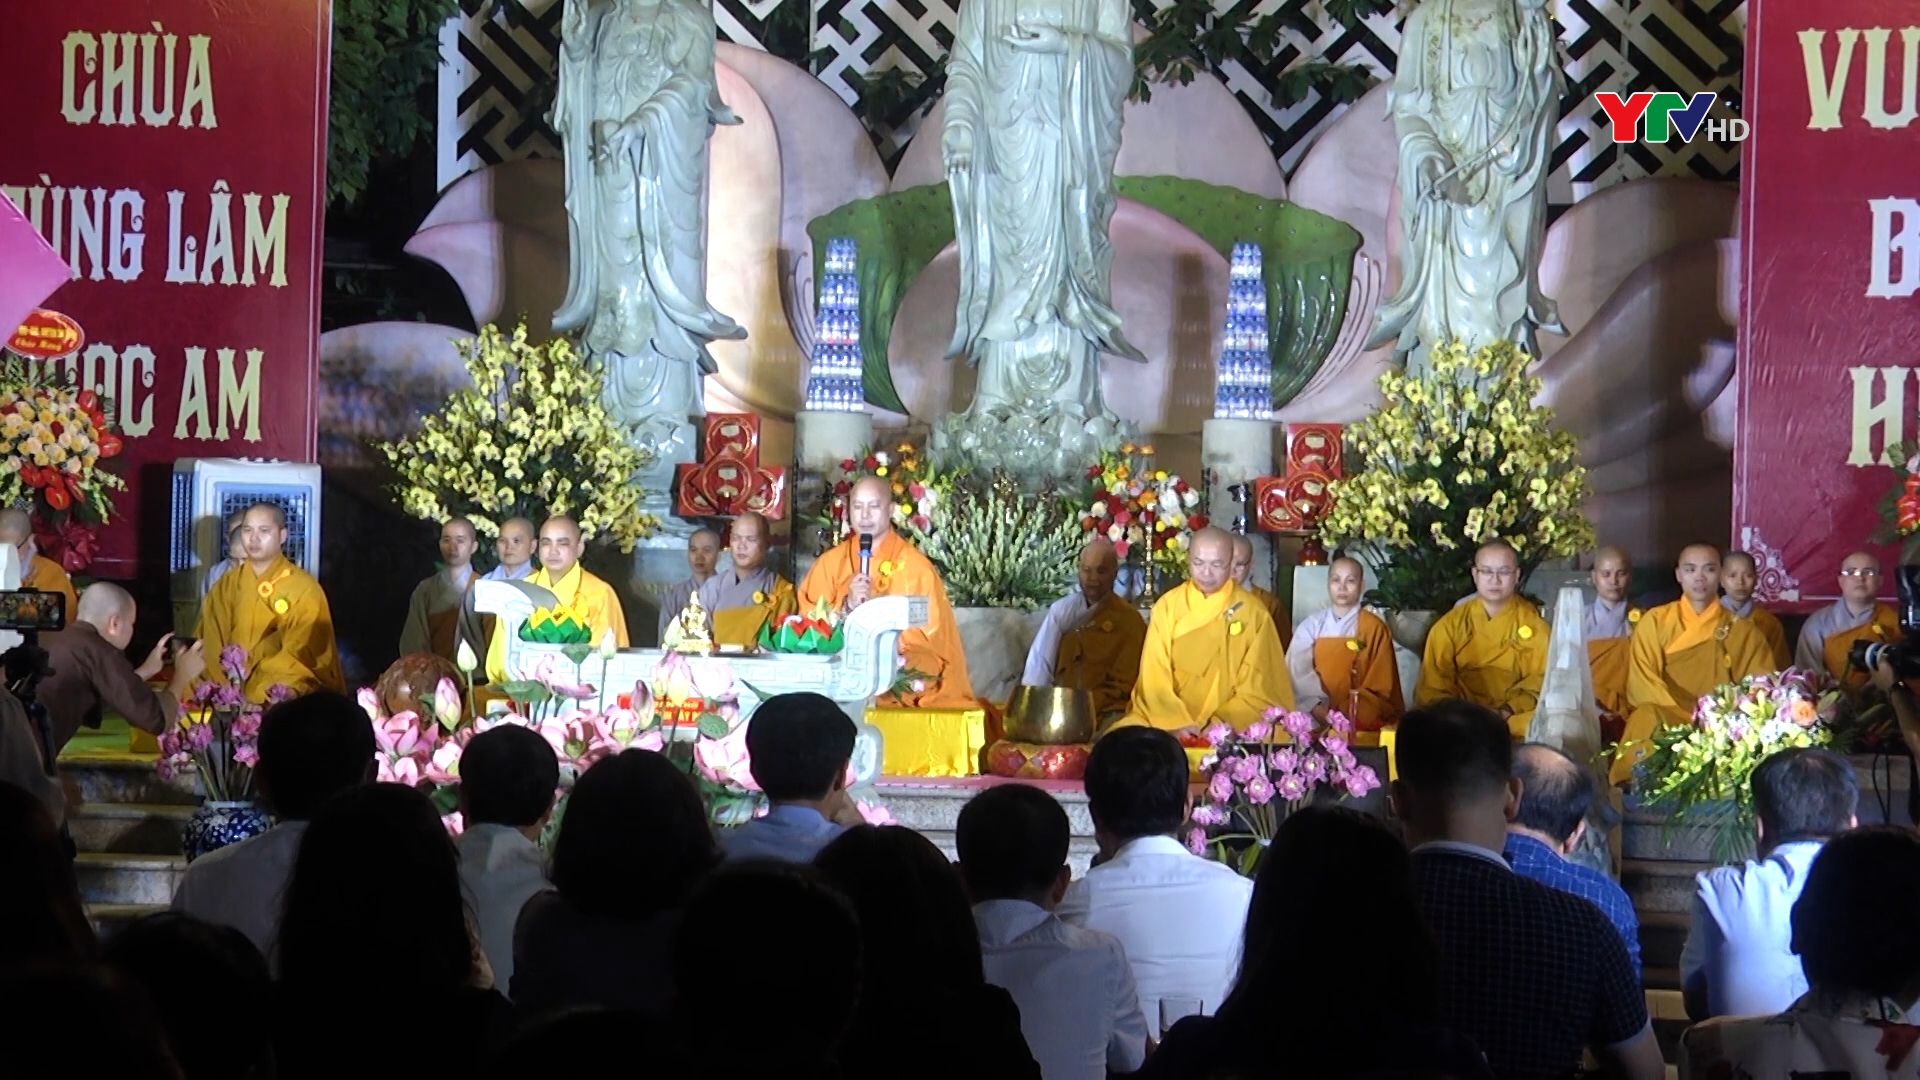 Lễ Vu Lan báo hiếu Phật lịch 2566 – Dương lịch 2022 tại Chùa Tùng Lâm – Ngọc Am